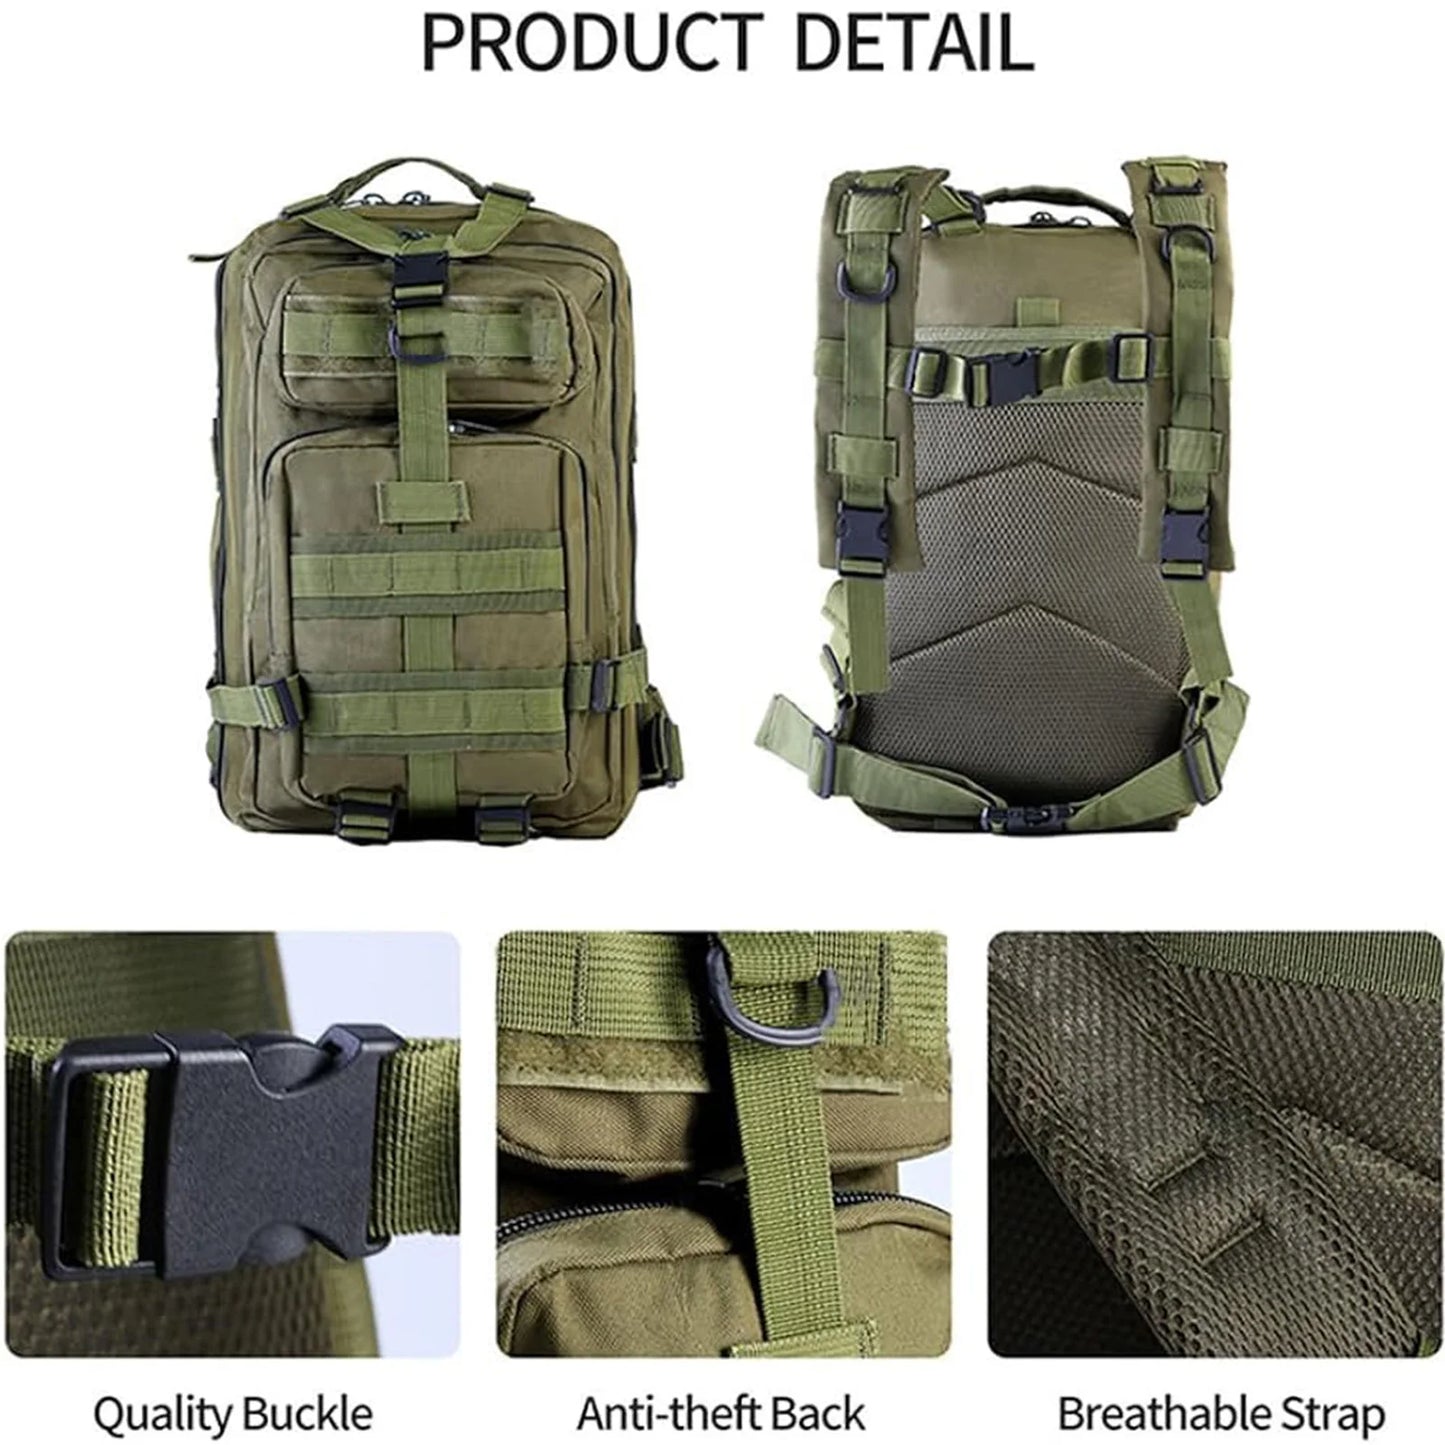 Syzm 50L ose 30L Taktik Backpack Ushtria e Ushtrisë Qetësia Molle Backpack për burra Hiking në natyrë Hiking